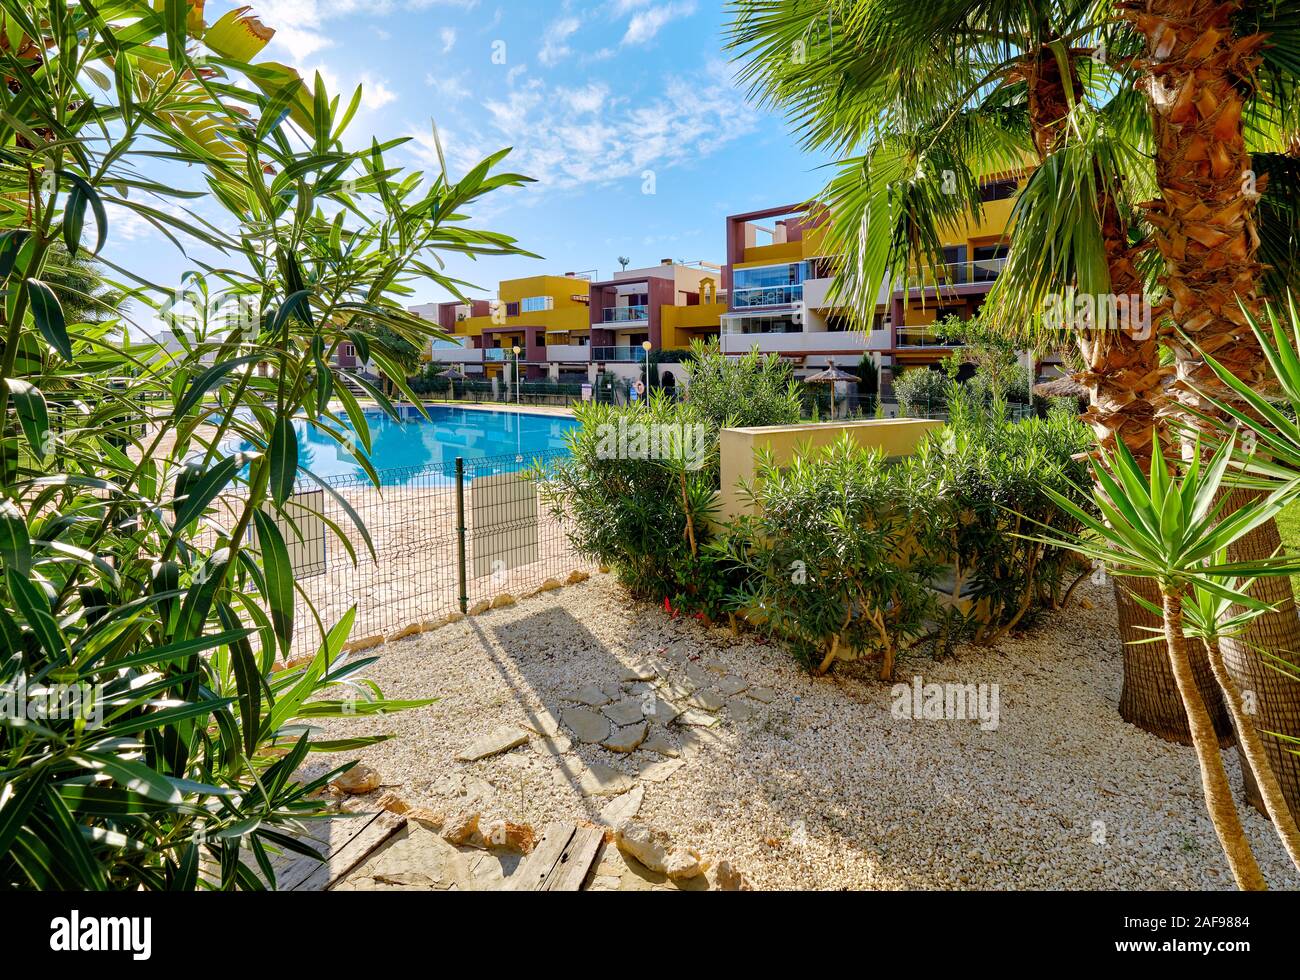 Luxuriöse Wohnhäuser mehrfarbige Wohnungen durch üppige tropische Pflanzen Blätter, öffentliche Sicht auf den Swimmingpool am sonnigen Tag. Torrevieja, Spanien Stockfoto